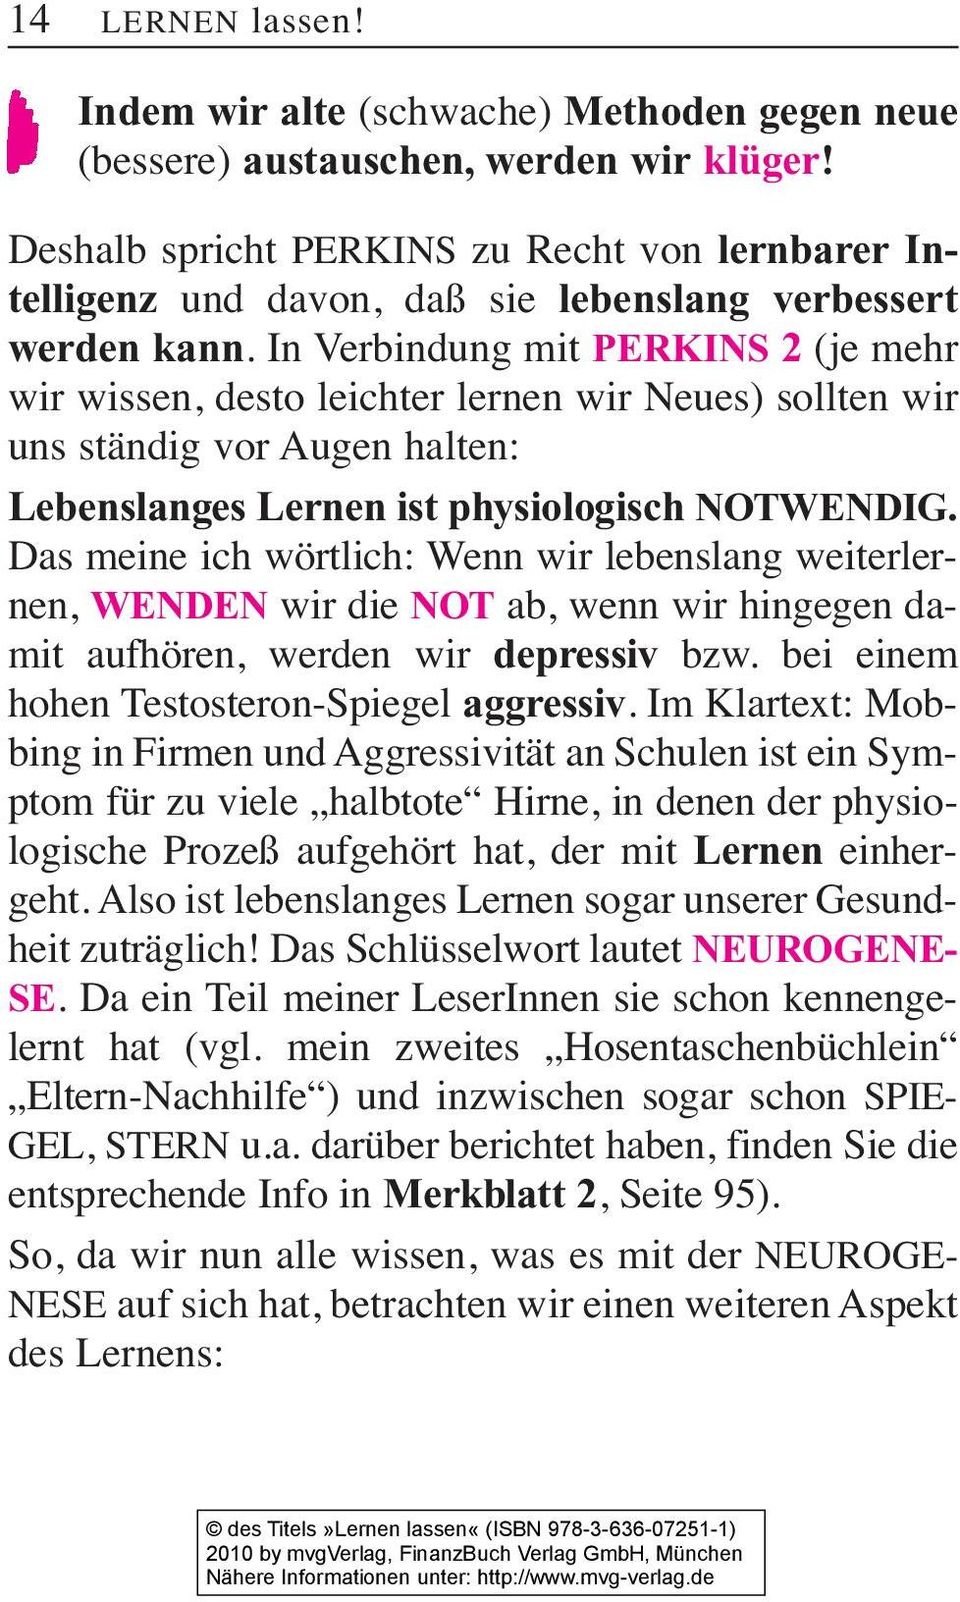 In Verbindung mit PERKINS 2 (je mehr wir wissen, desto leichter lernen wir Neues) sollten wir uns ständig vor Augen halten: Lebenslanges Lernen ist physiologisch NOTWENDIG.